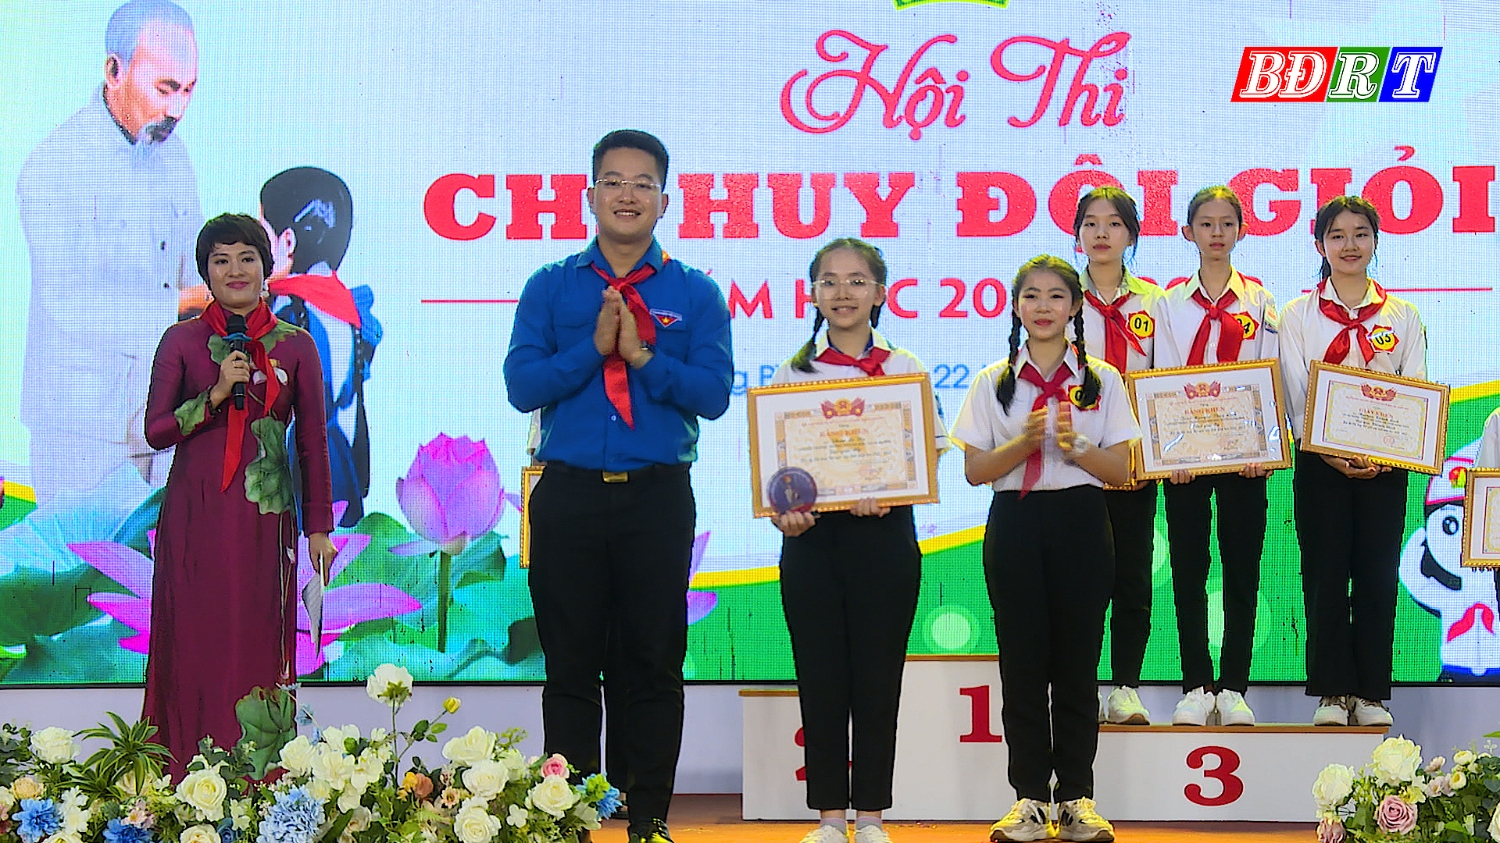 Ban tổ chức đã trao giải Nhì Chỉ huy đội giỏi cho em Phan Lê Na, học sinh trường THCS Nguyễn Hàm Ninh, thị xã Ba Đồn